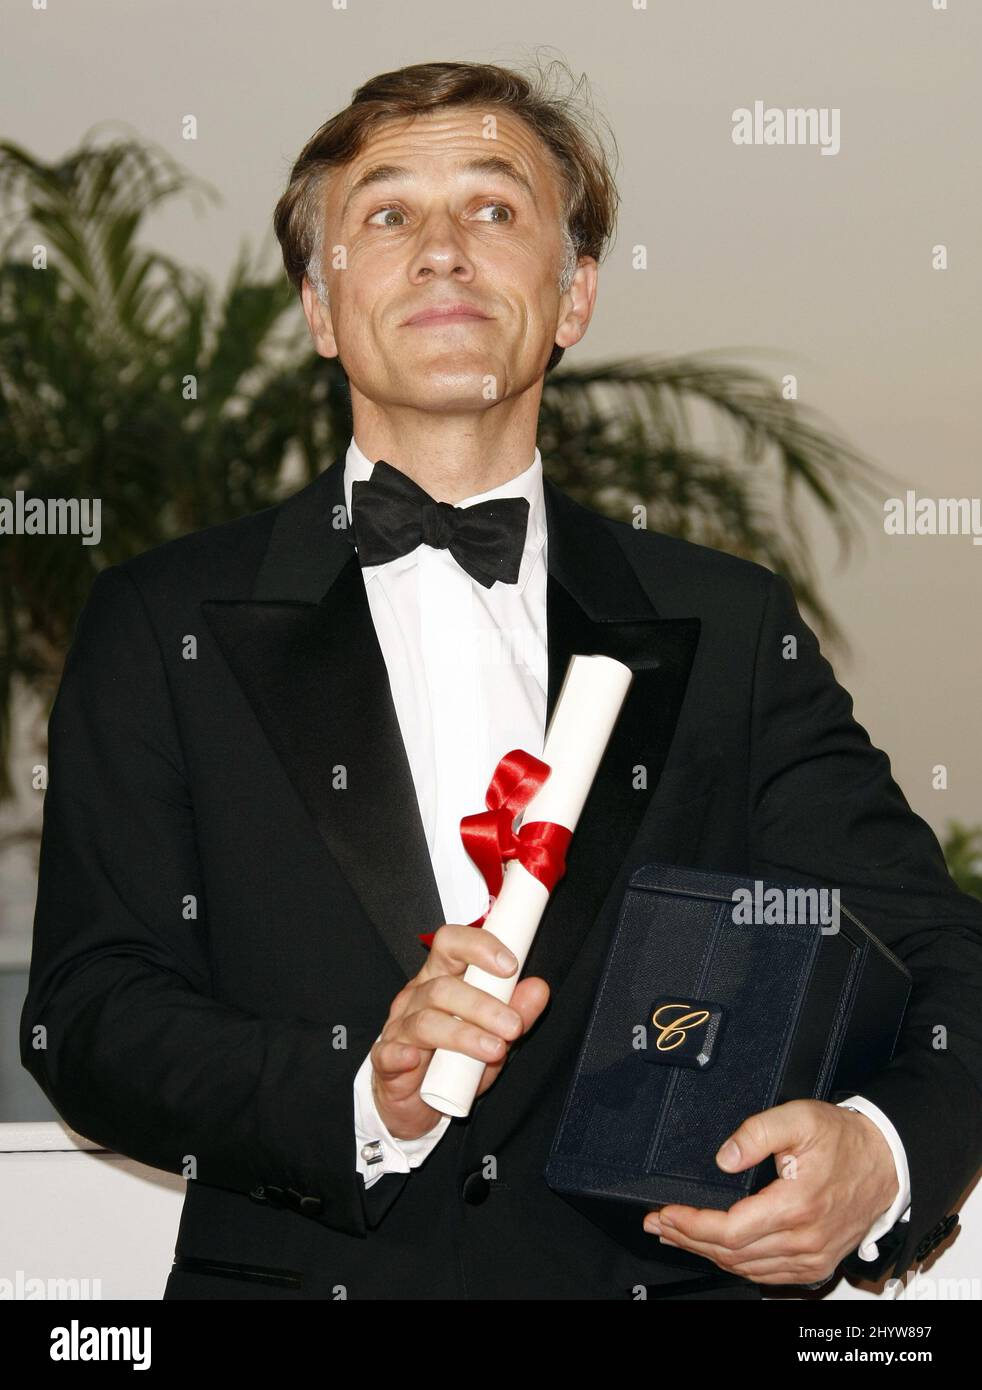 L'acteur autrichien Christoph Waltz pose avec le prix du meilleur acteur qu'il a reçu pour le film "Inglourious Basterds", lors d'un appel photo à la suite de la cérémonie de remise des prix, lors du festival international du film 62nd à Cannes Banque D'Images